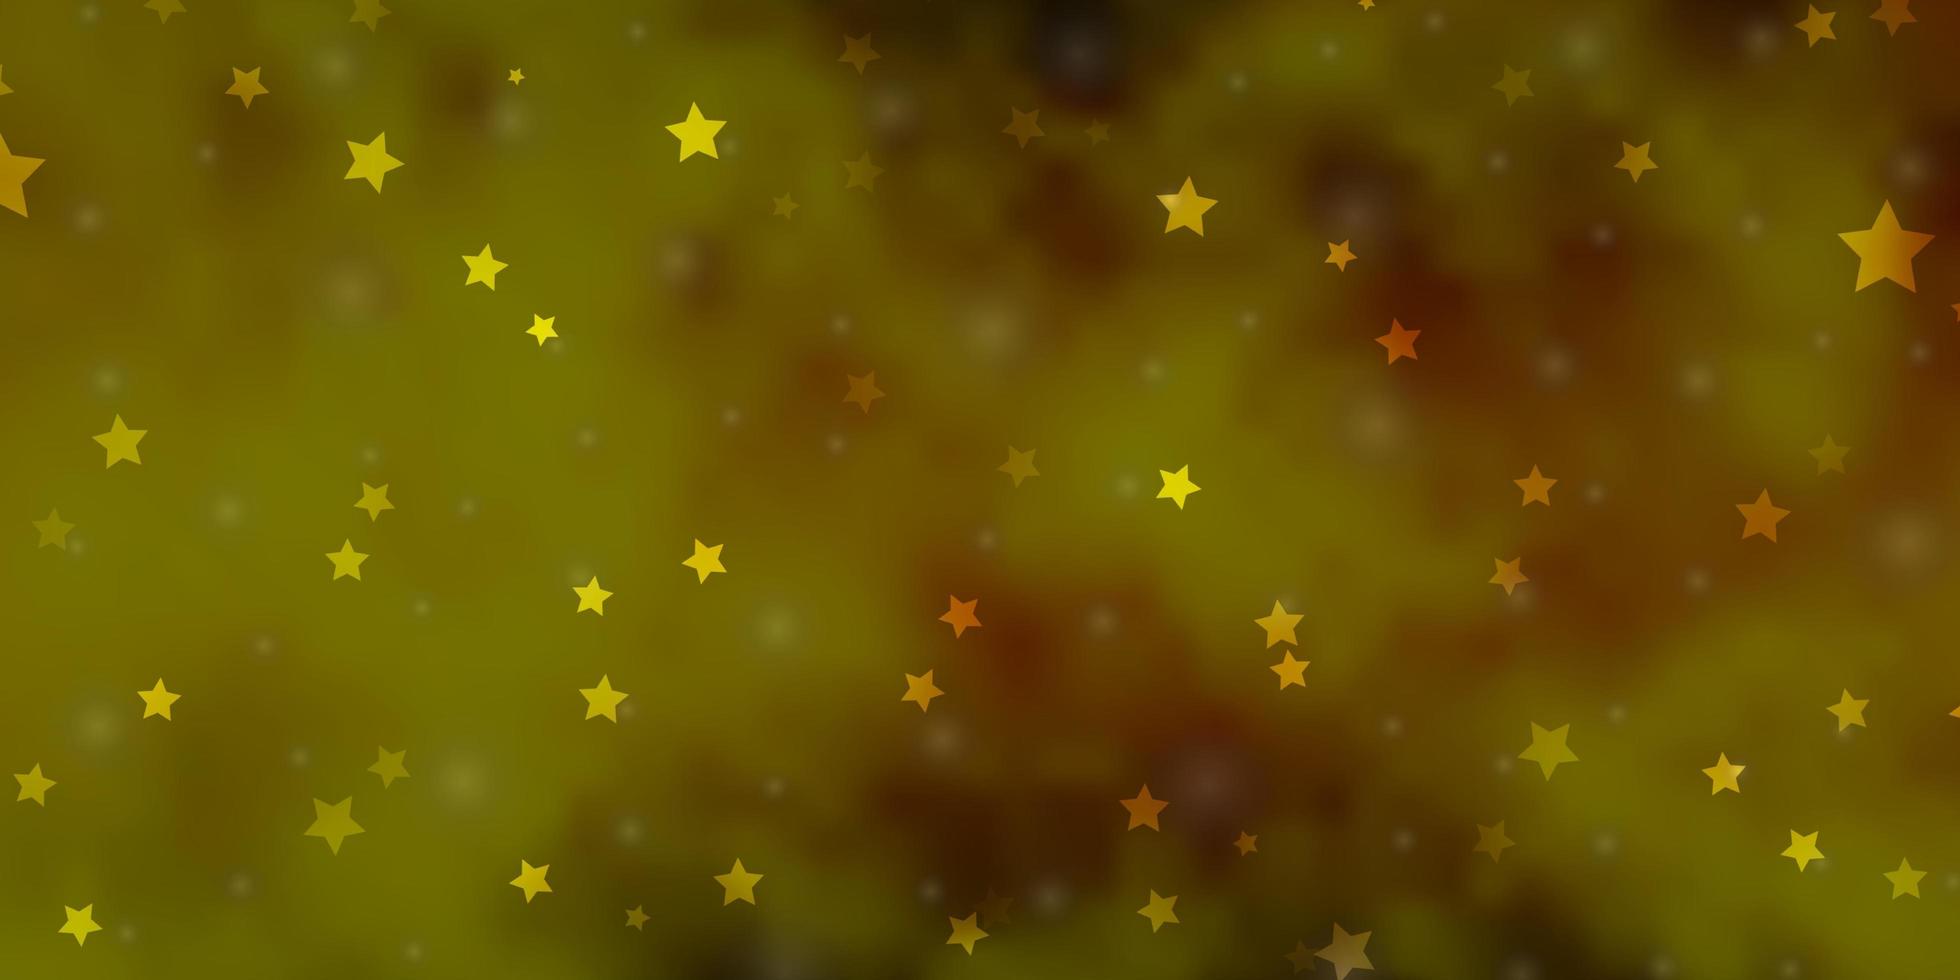 layout de vetor verde e amarelo claro com estrelas brilhantes.